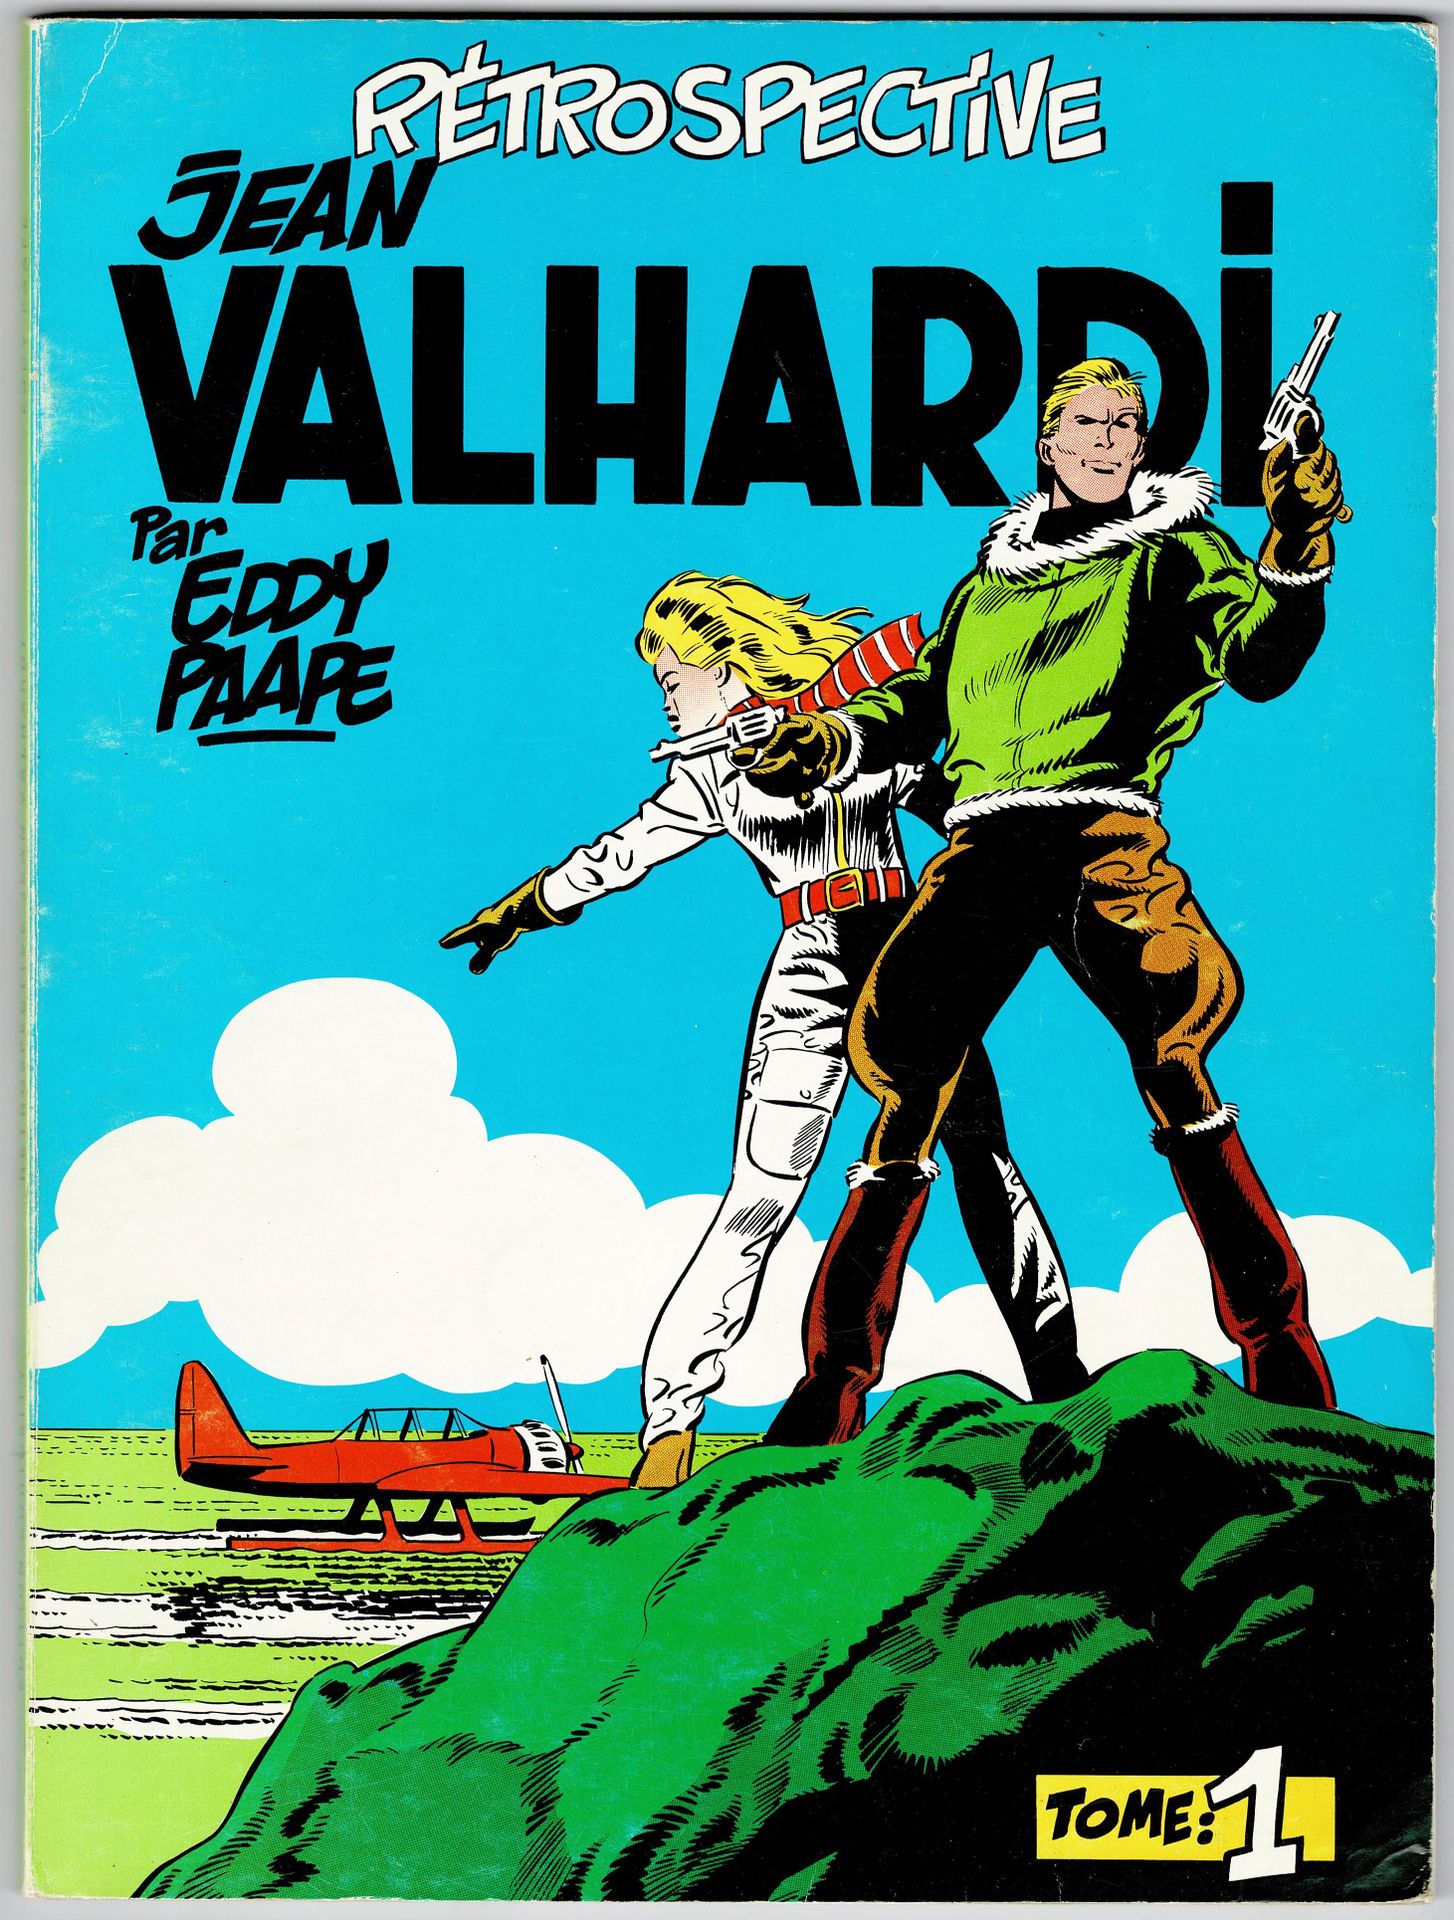 Valhardi 
Retrospectiva Jean Valhardi Tomos 1 y 2 publicados por Deligne. Muy bu&hellip;